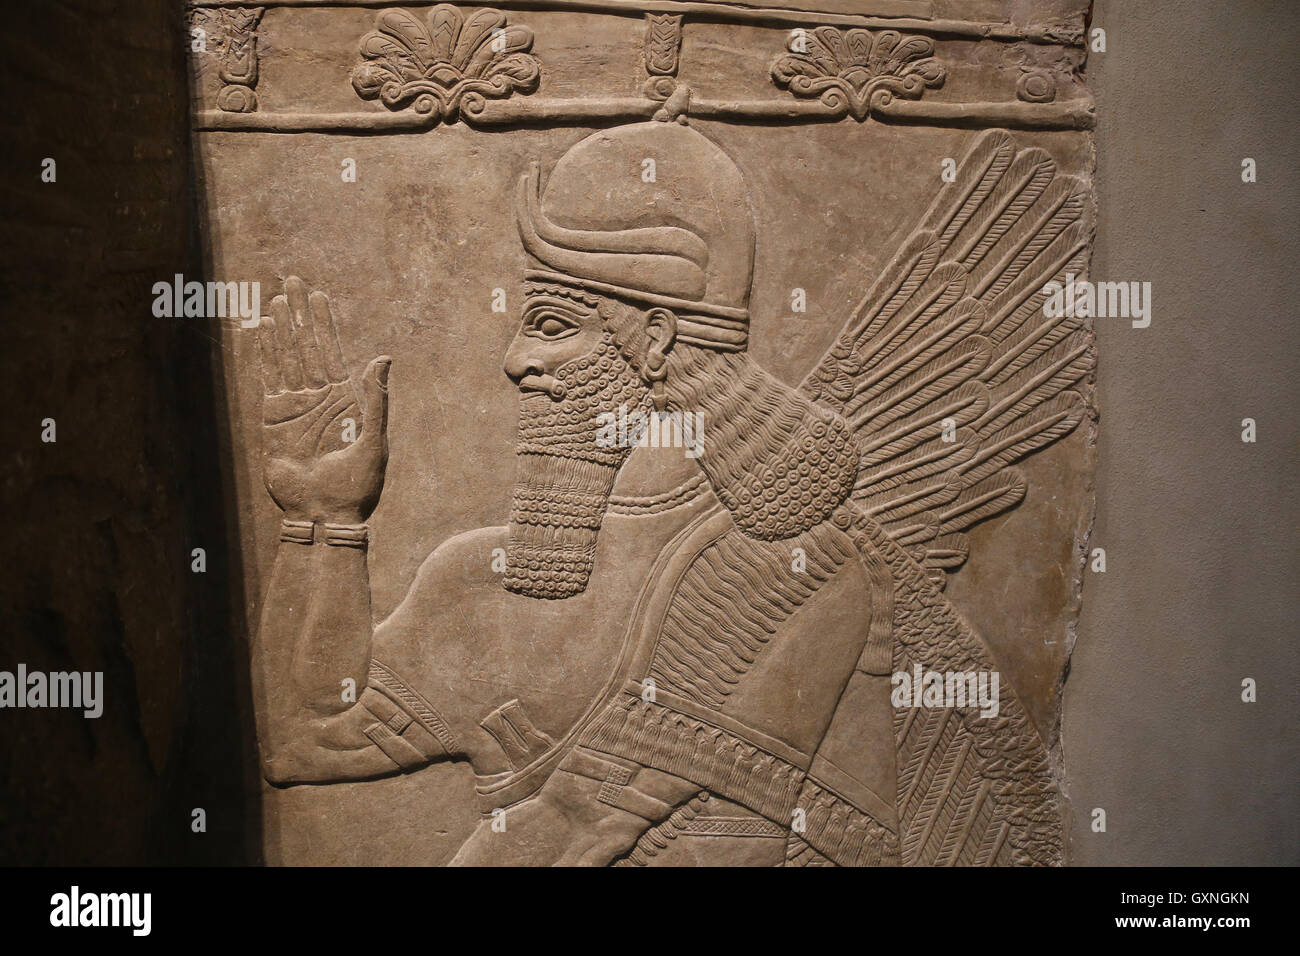 Rilievo con avvolto genius. Ix secolo A.C. Neo-Assyrian. Regno di Ashurnasirpal. Nimrud (antica Kalhu). Mesopotamia settentrionale. Foto Stock